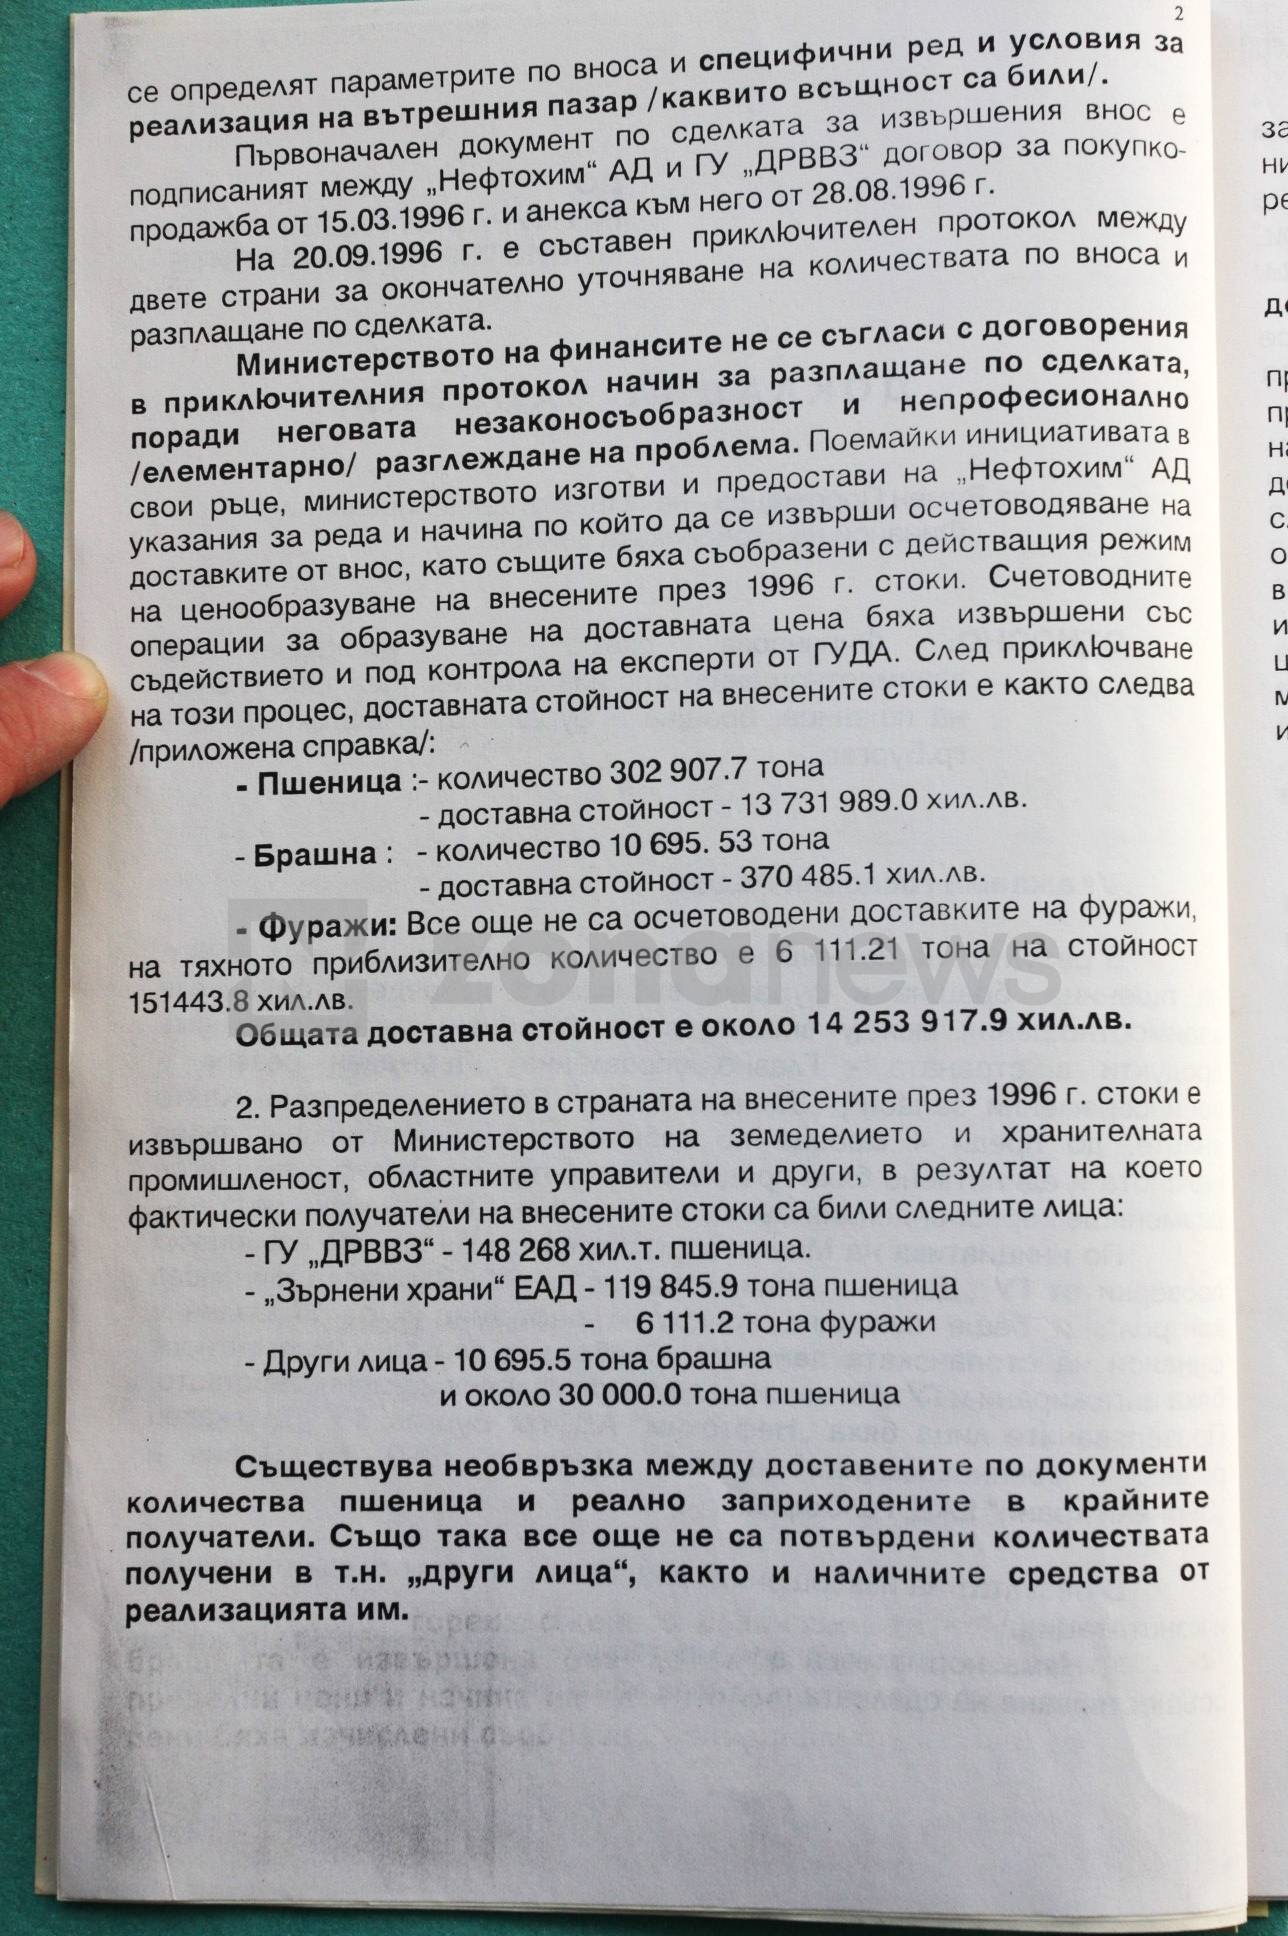 Докладна записка от Румен Порожанов до министъра на финансите Муравей Радев 